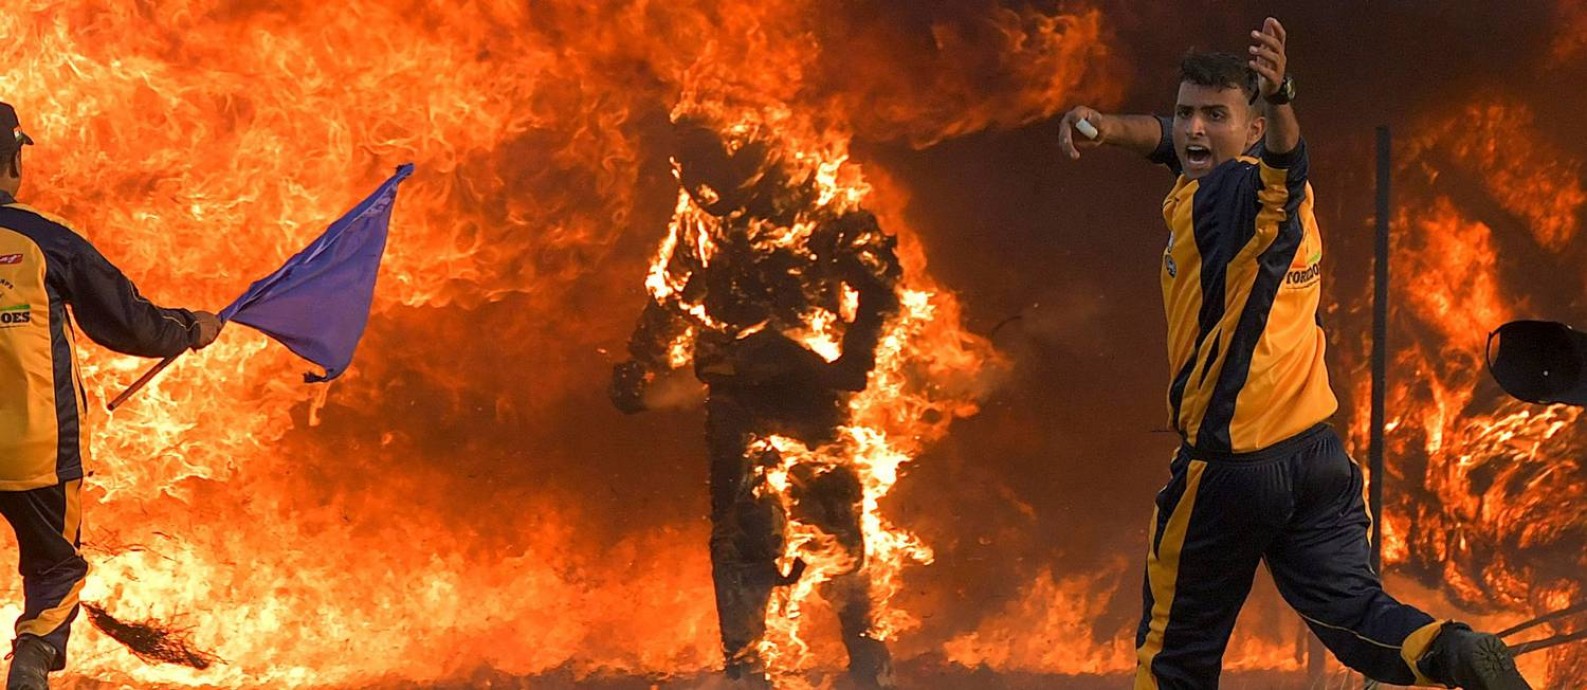 Singh sofreu ferimentos leves por queimadura ao tentar o recorde Foto: MANJUNATH KIRAN / AFP